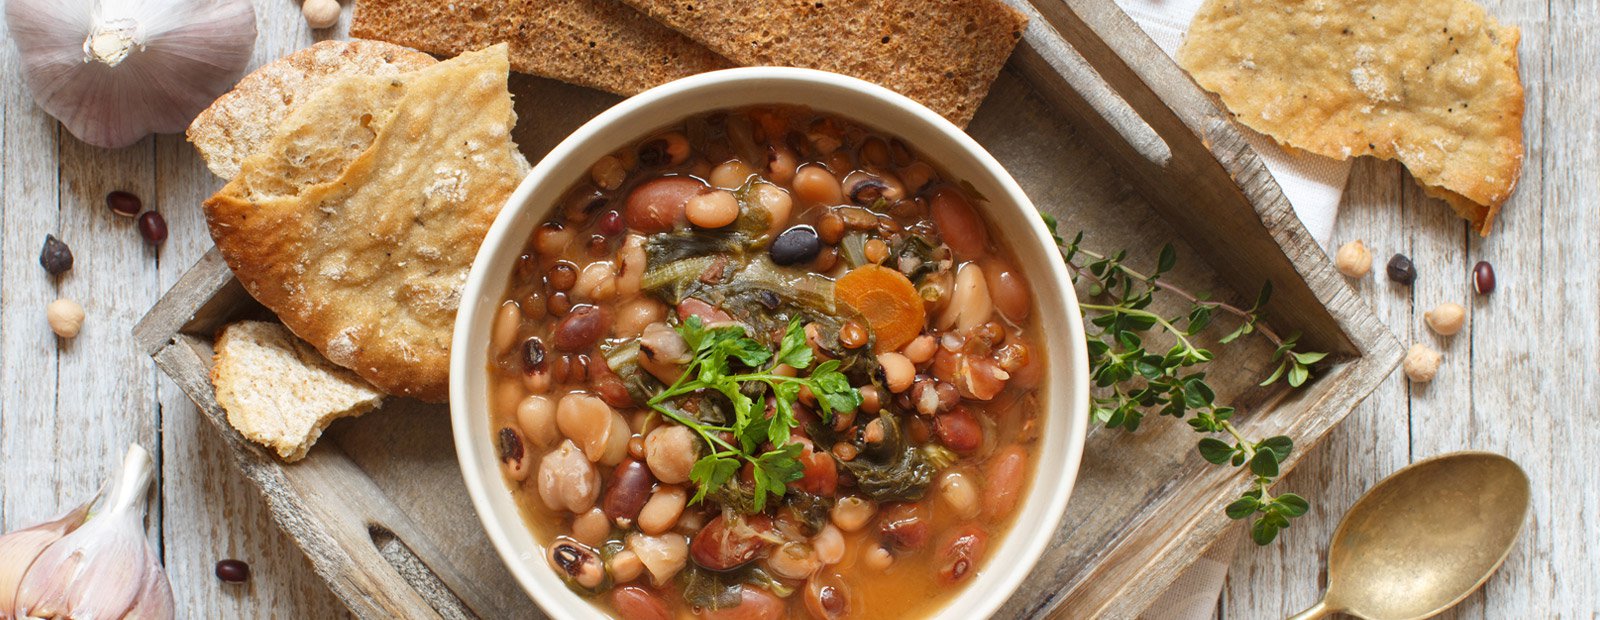 Zuppe e legumi, un perfetto connubio invernale